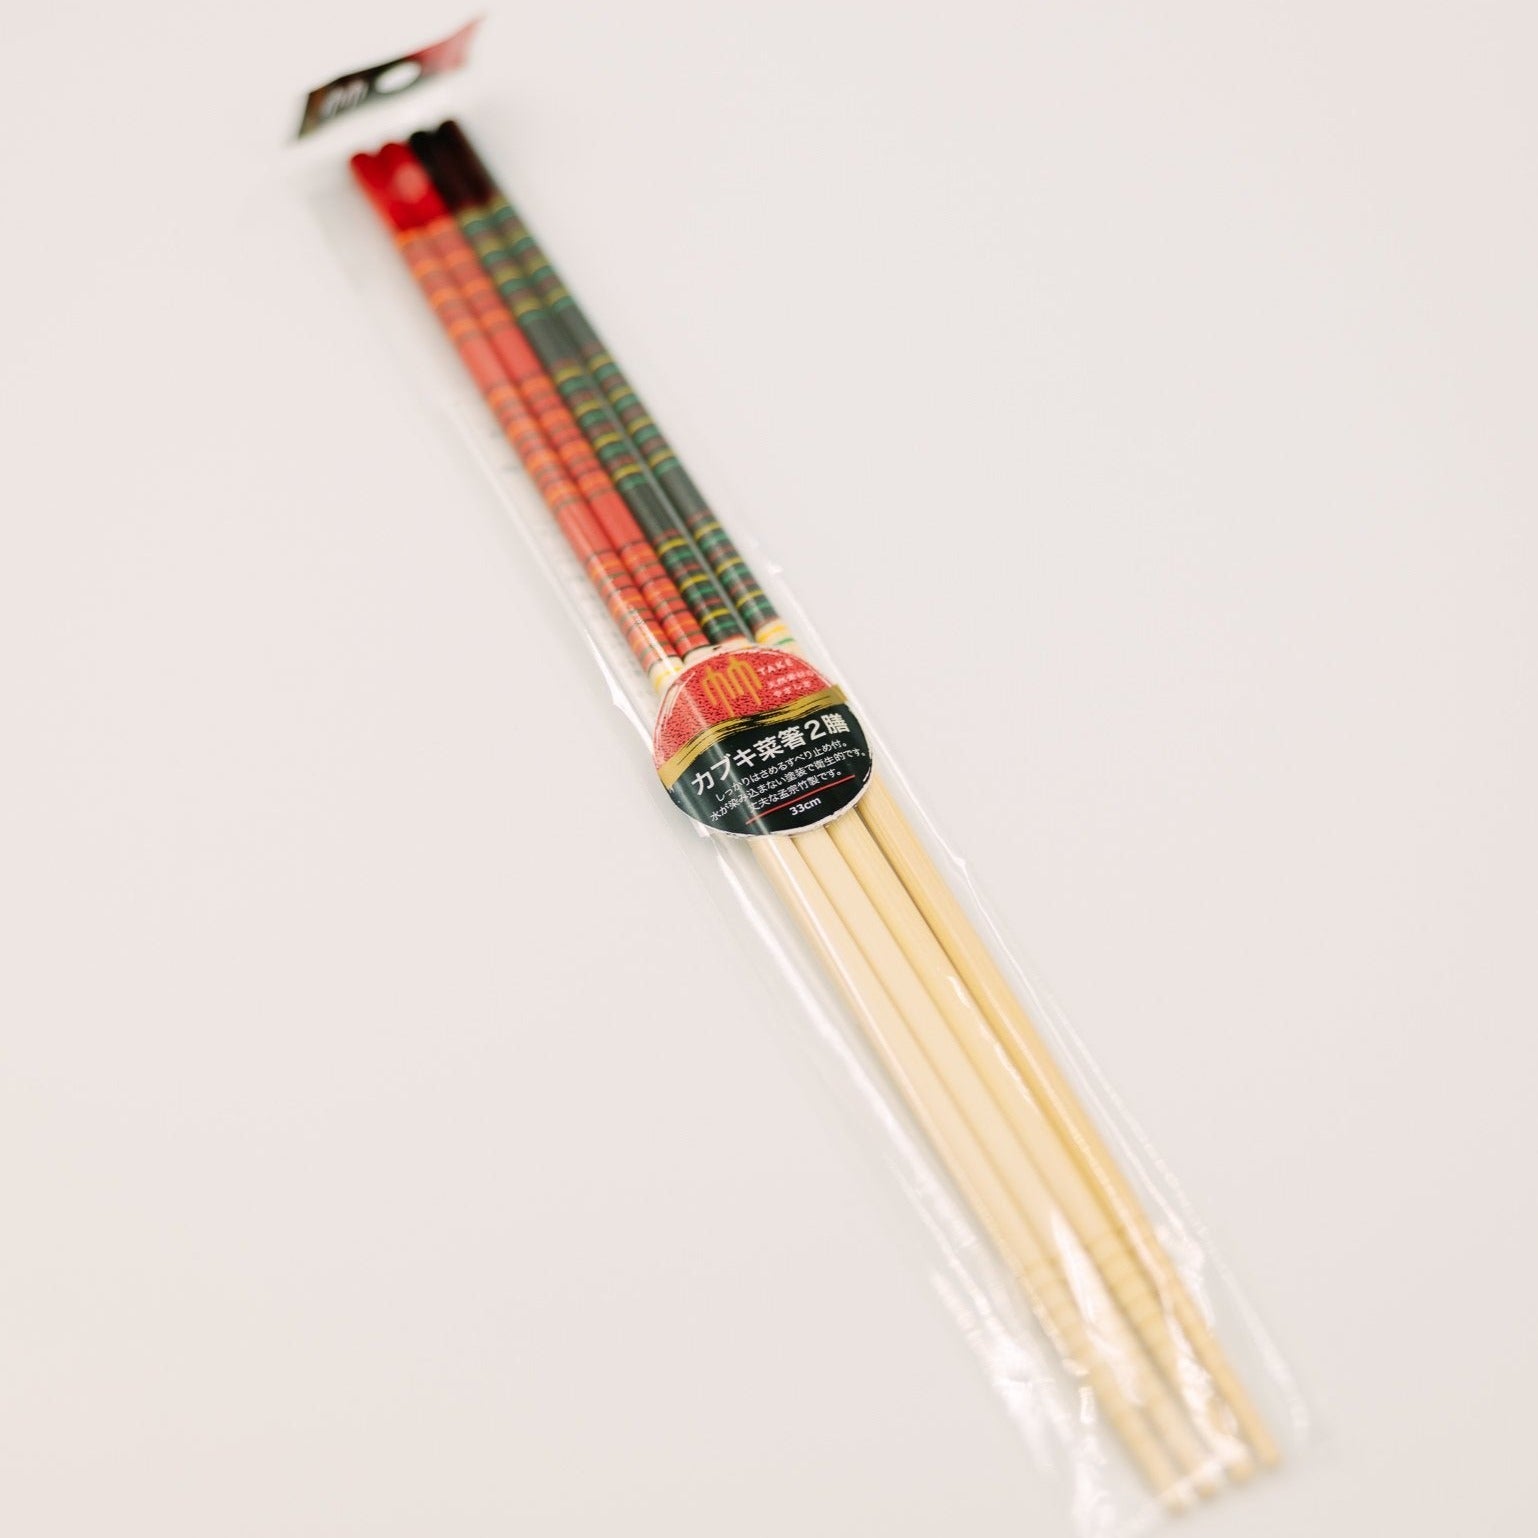 Palillos japoneses imagen de archivo. Imagen de cocina - 8904339